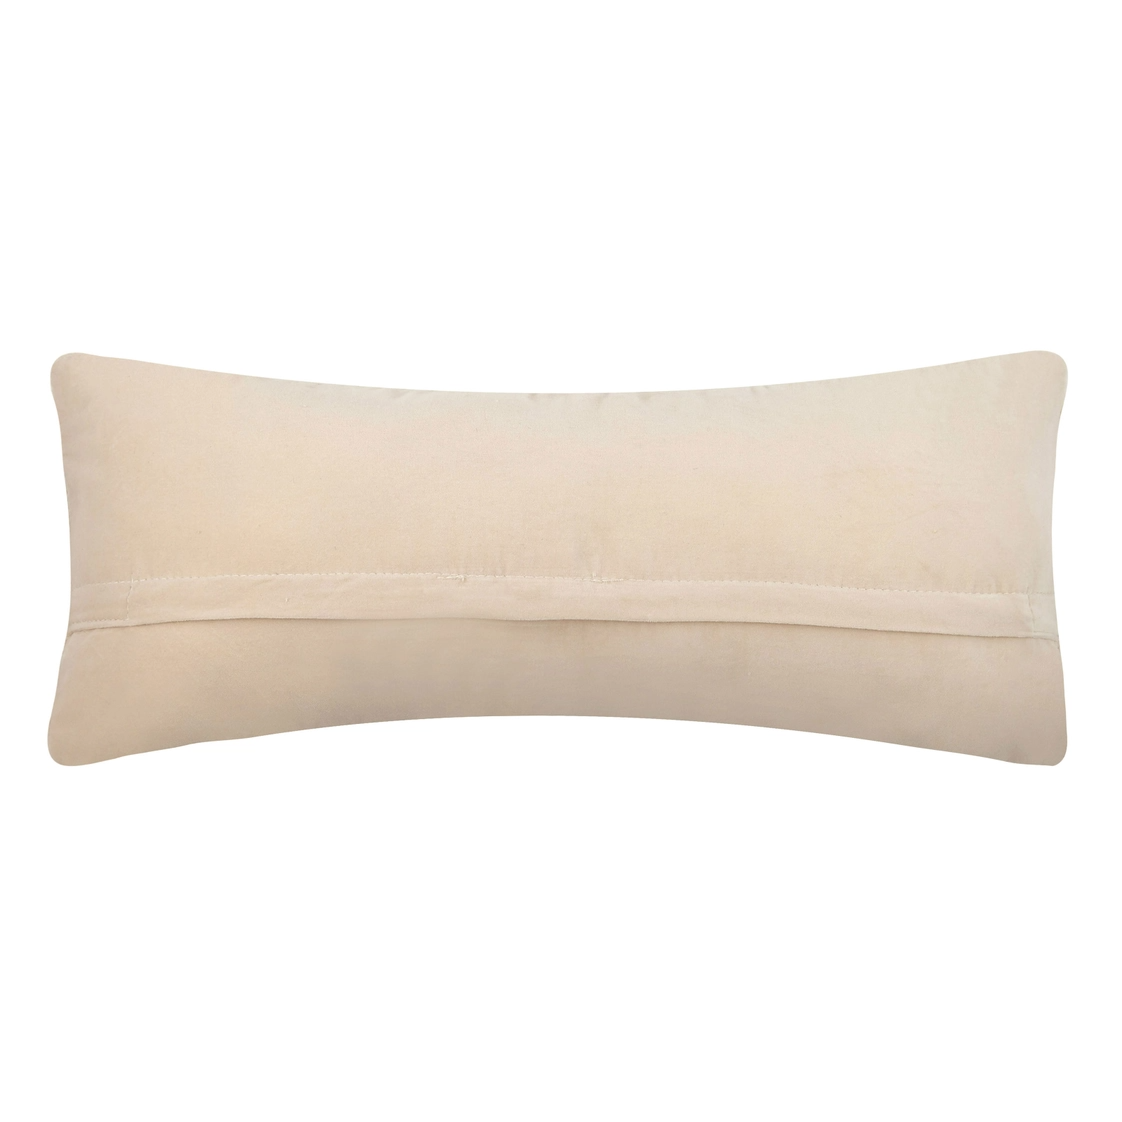 Needlepoint Kentucky Pillow